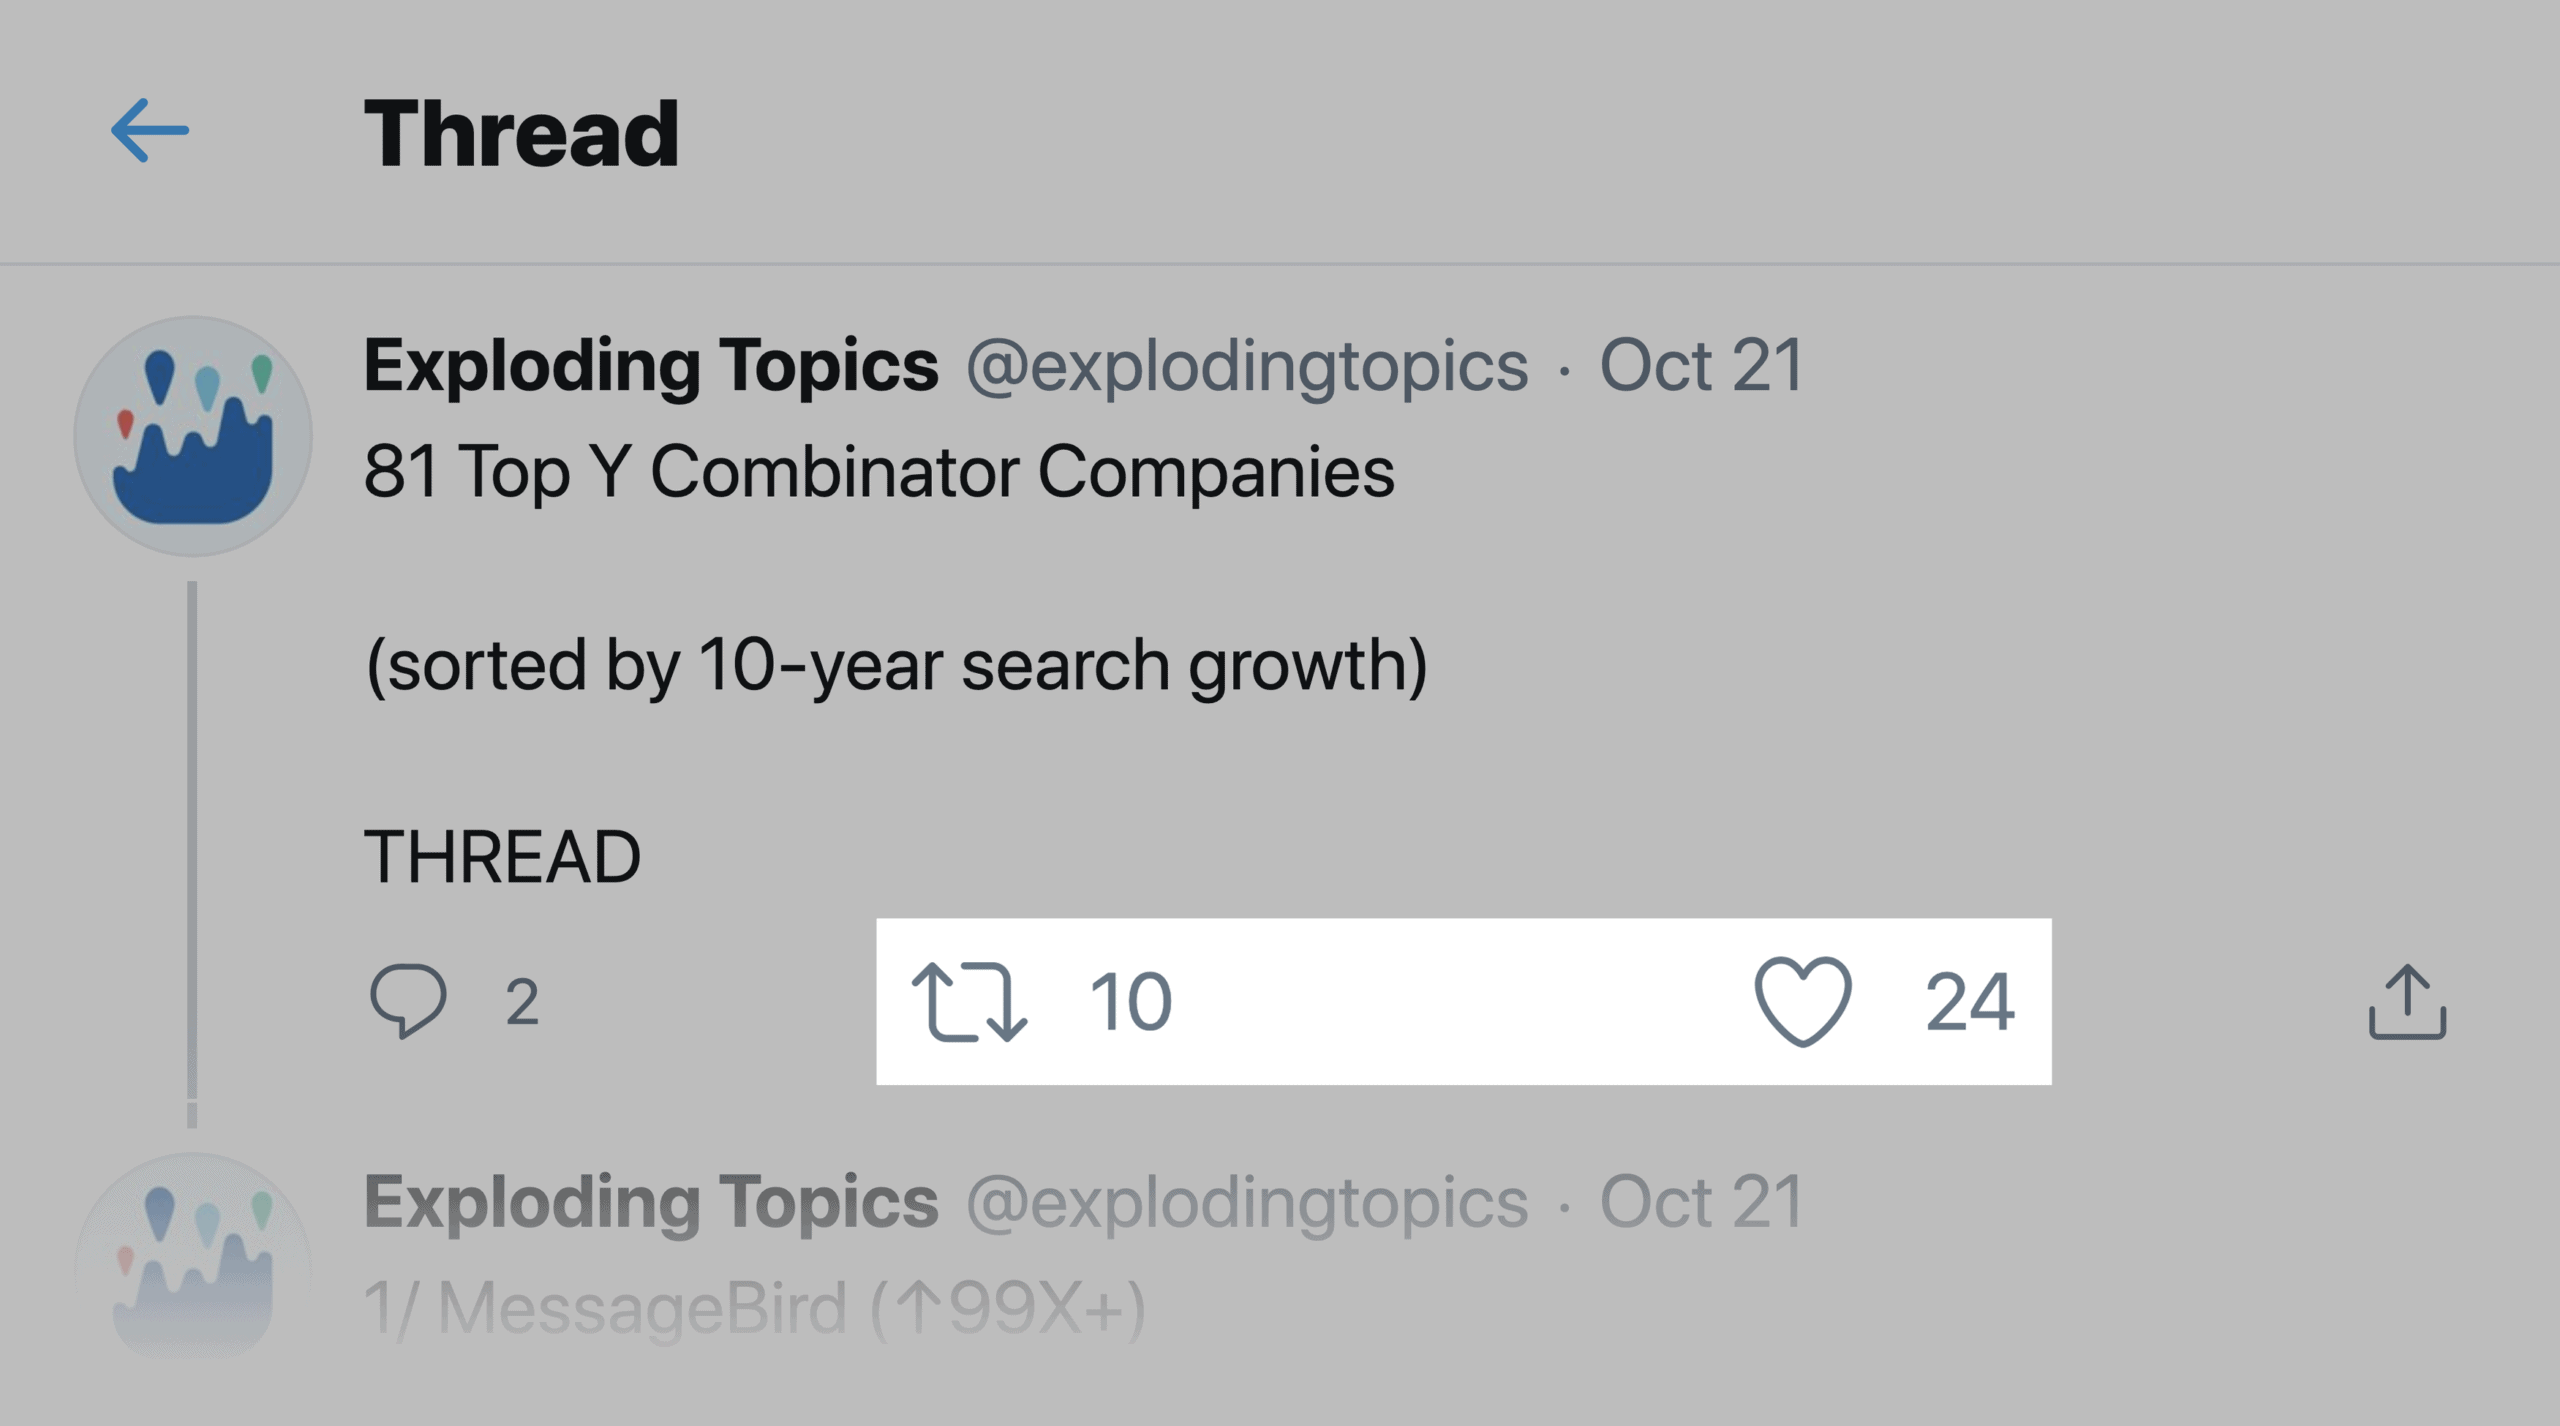 Exploding Topics – Top Y Combinator Companies Tweet Thread Engagement